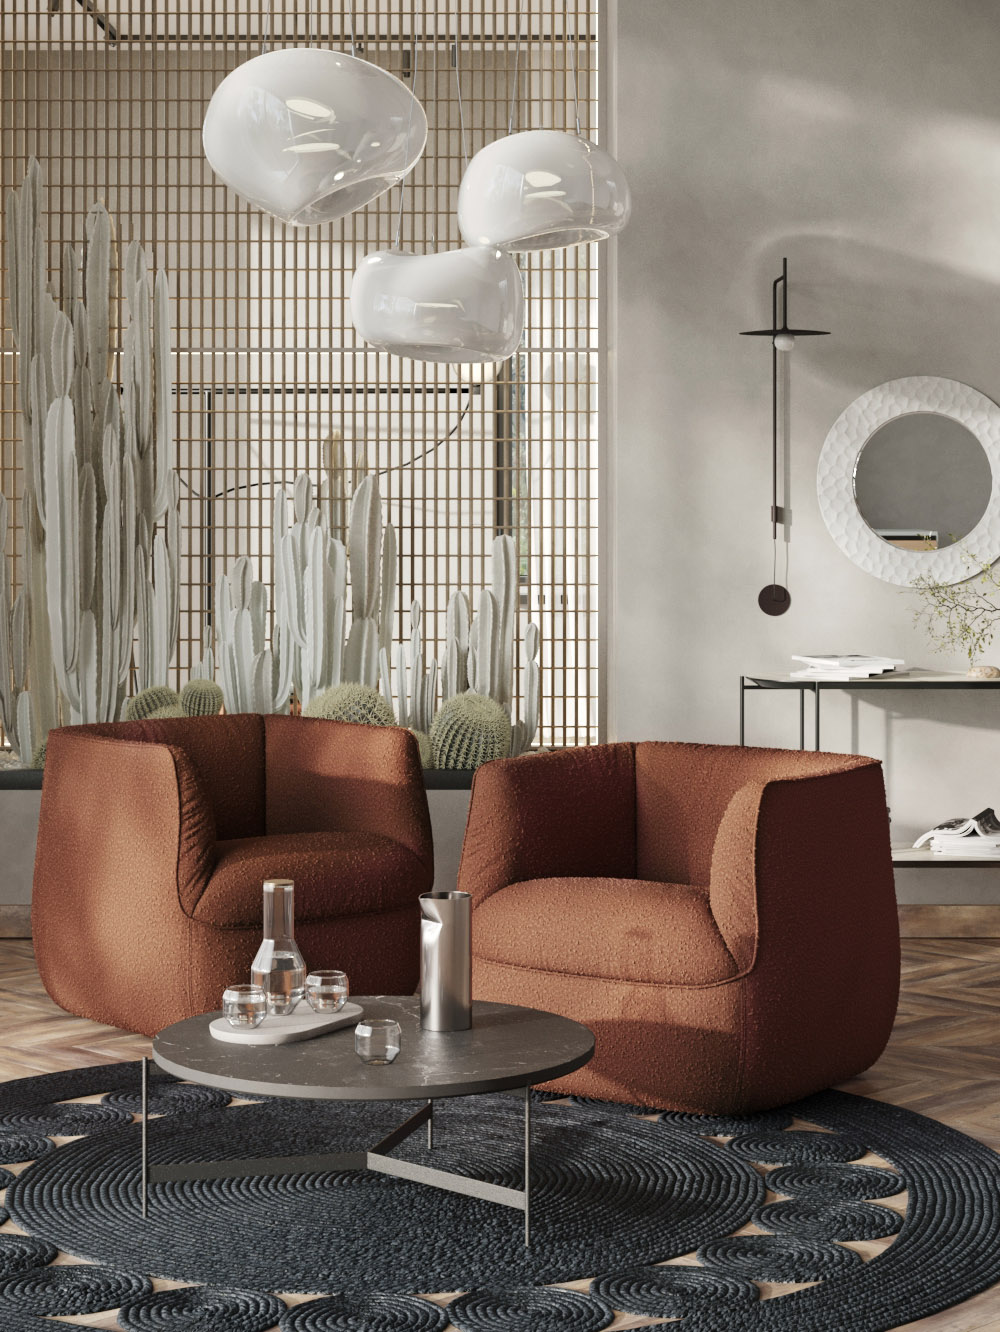 Кресло с обивкой букле от российского бренда SK Design. Источник: skdesign.ru